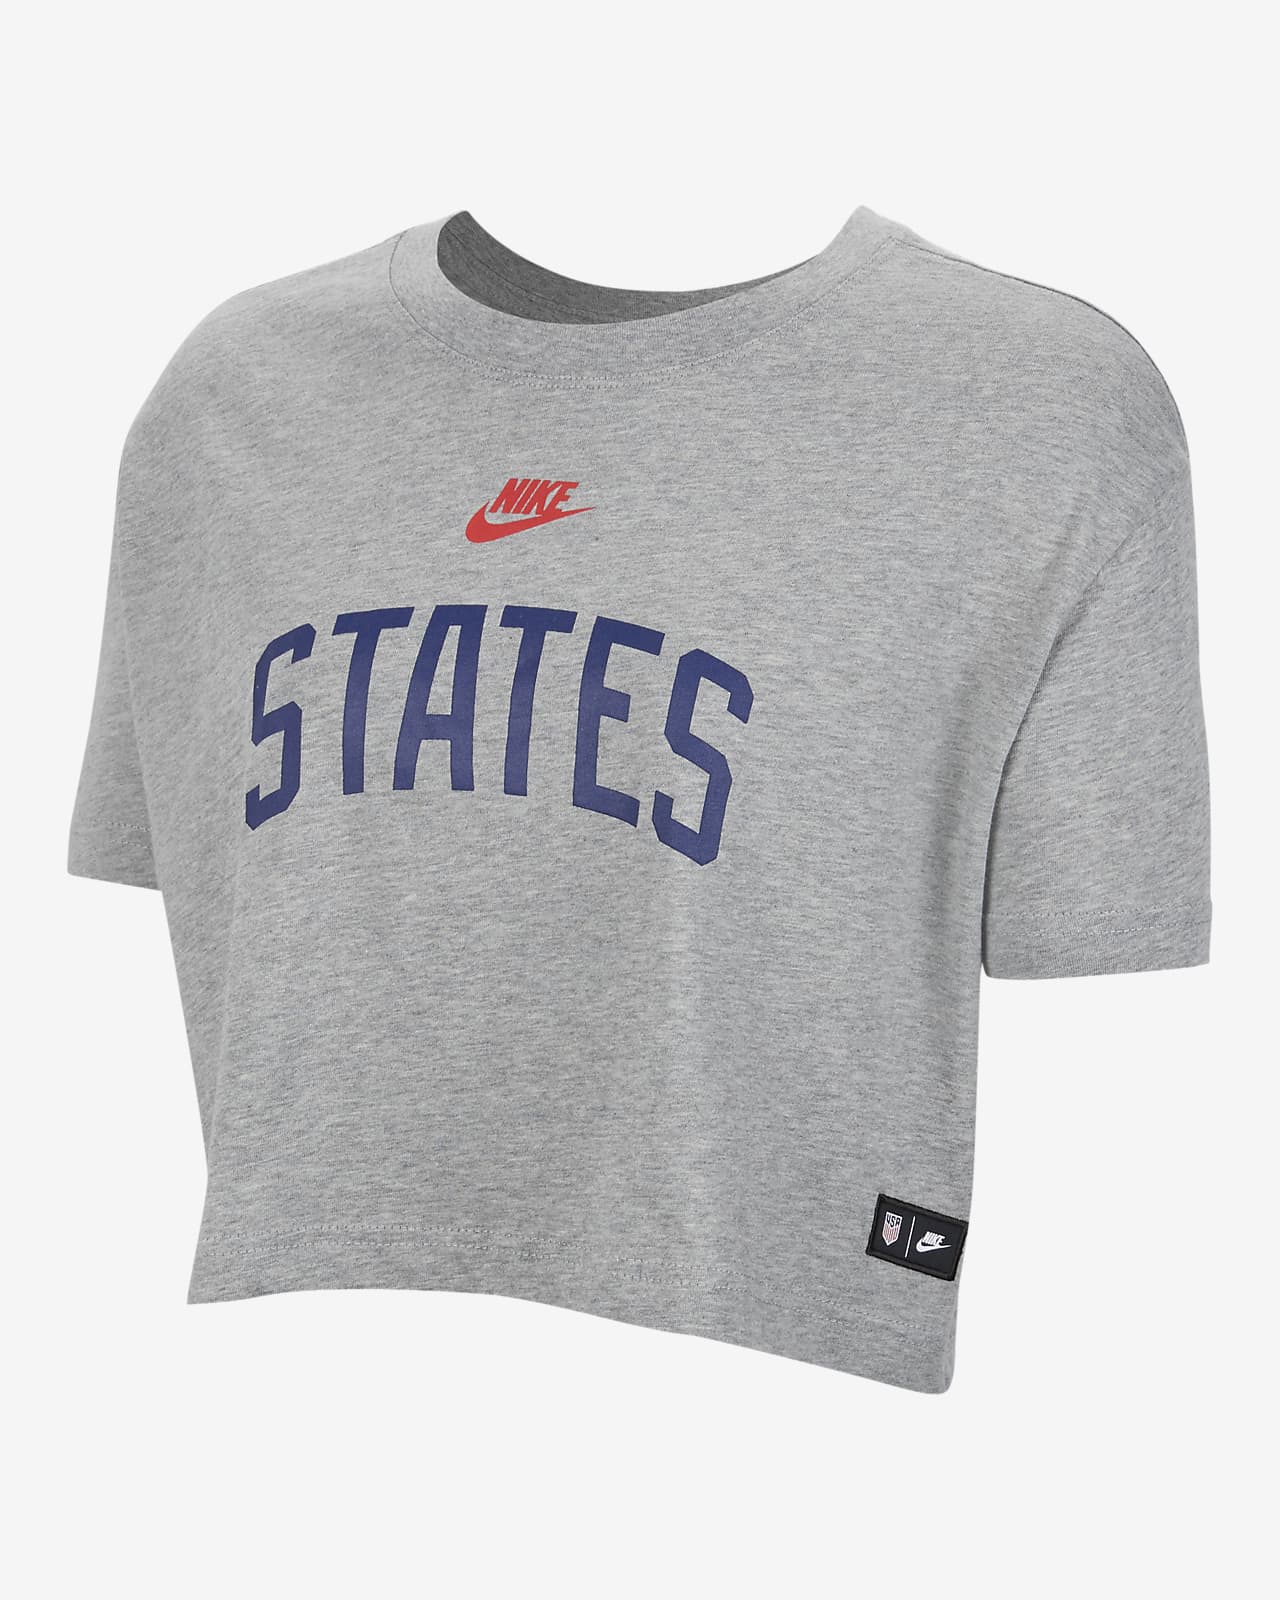 U.S. Women's Soccer T-Shirt. Nike.com